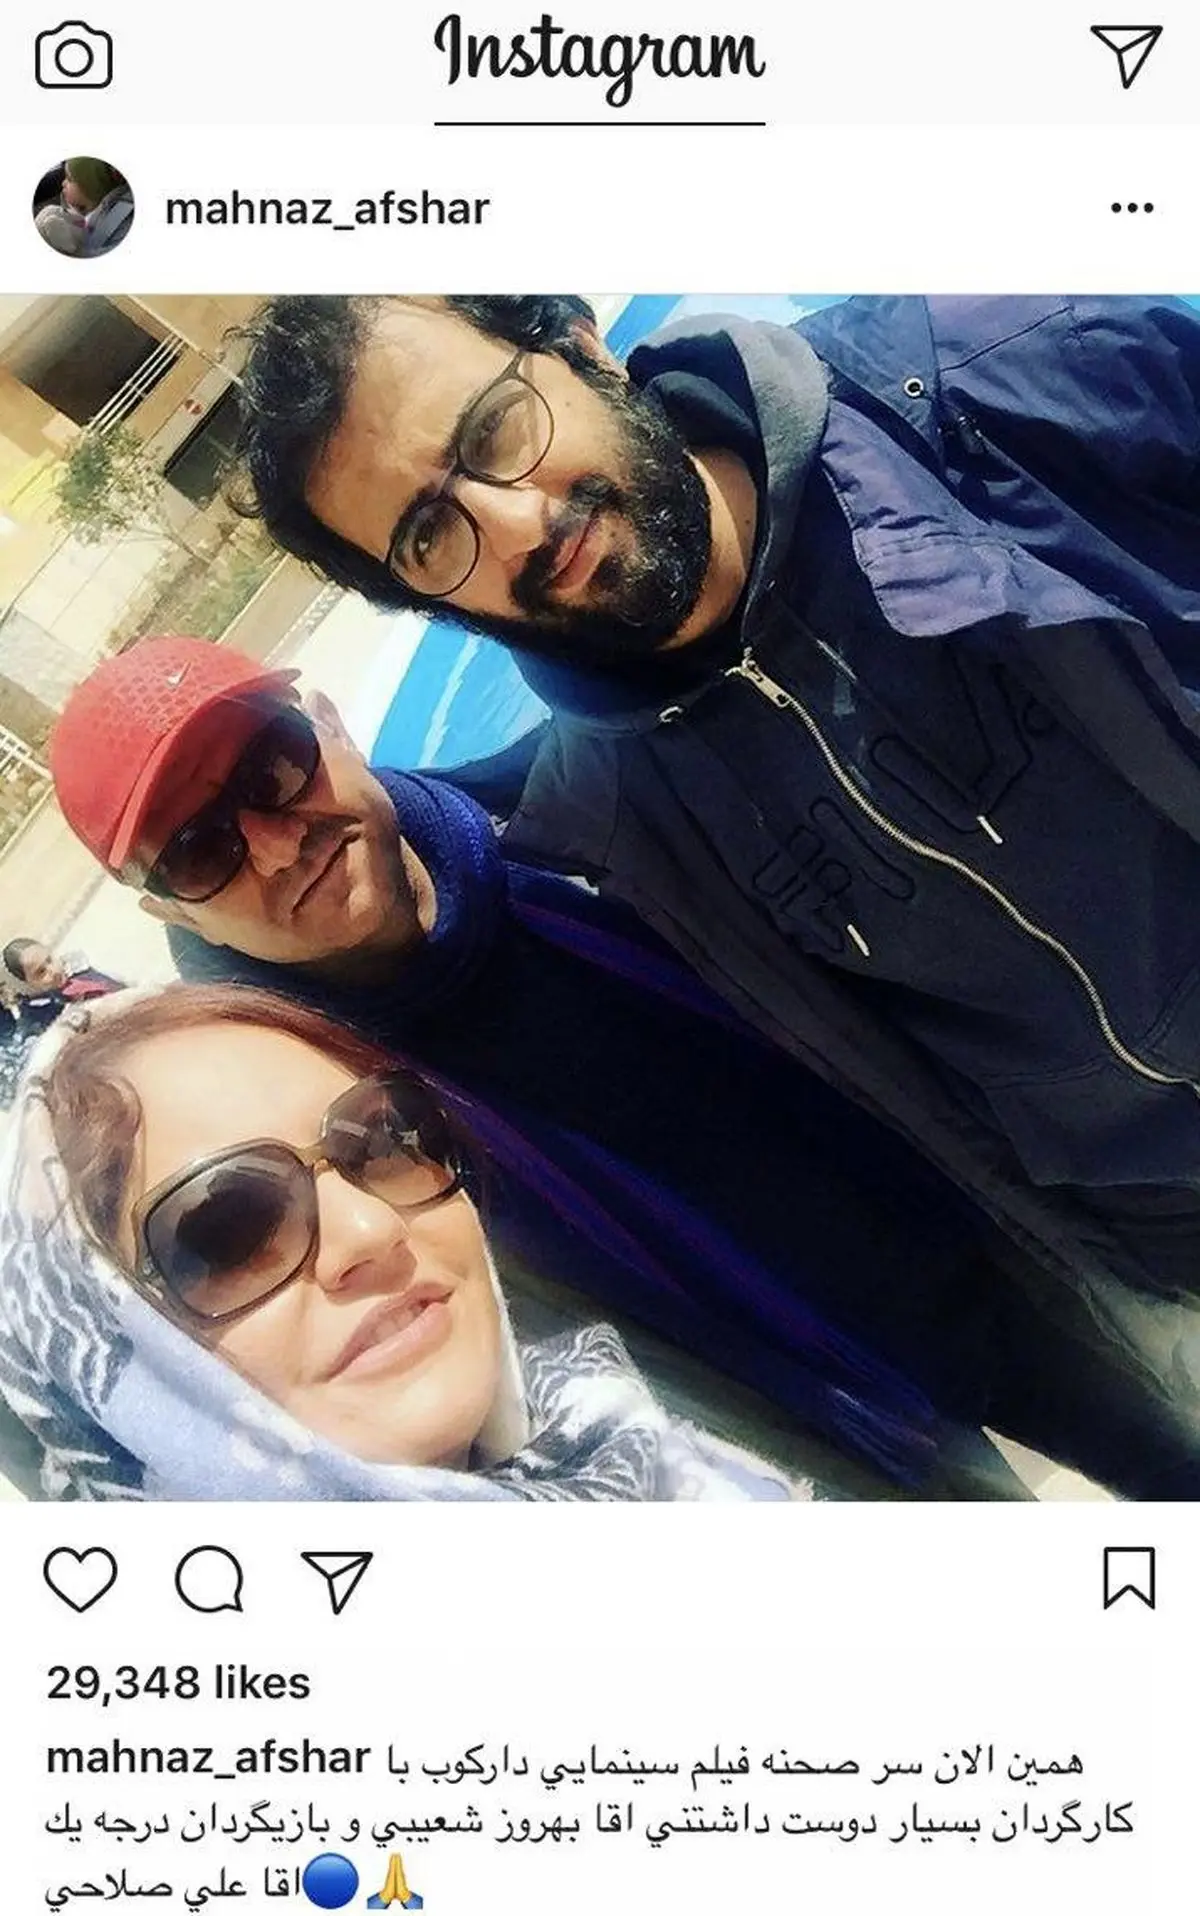 مهنا‌ز‌ ا‌فشا‌ر و کارگردان دوست داشتنی د‌ر پشت‌ صحنه فیلم‌ د‌ار‌کوب! + عکس